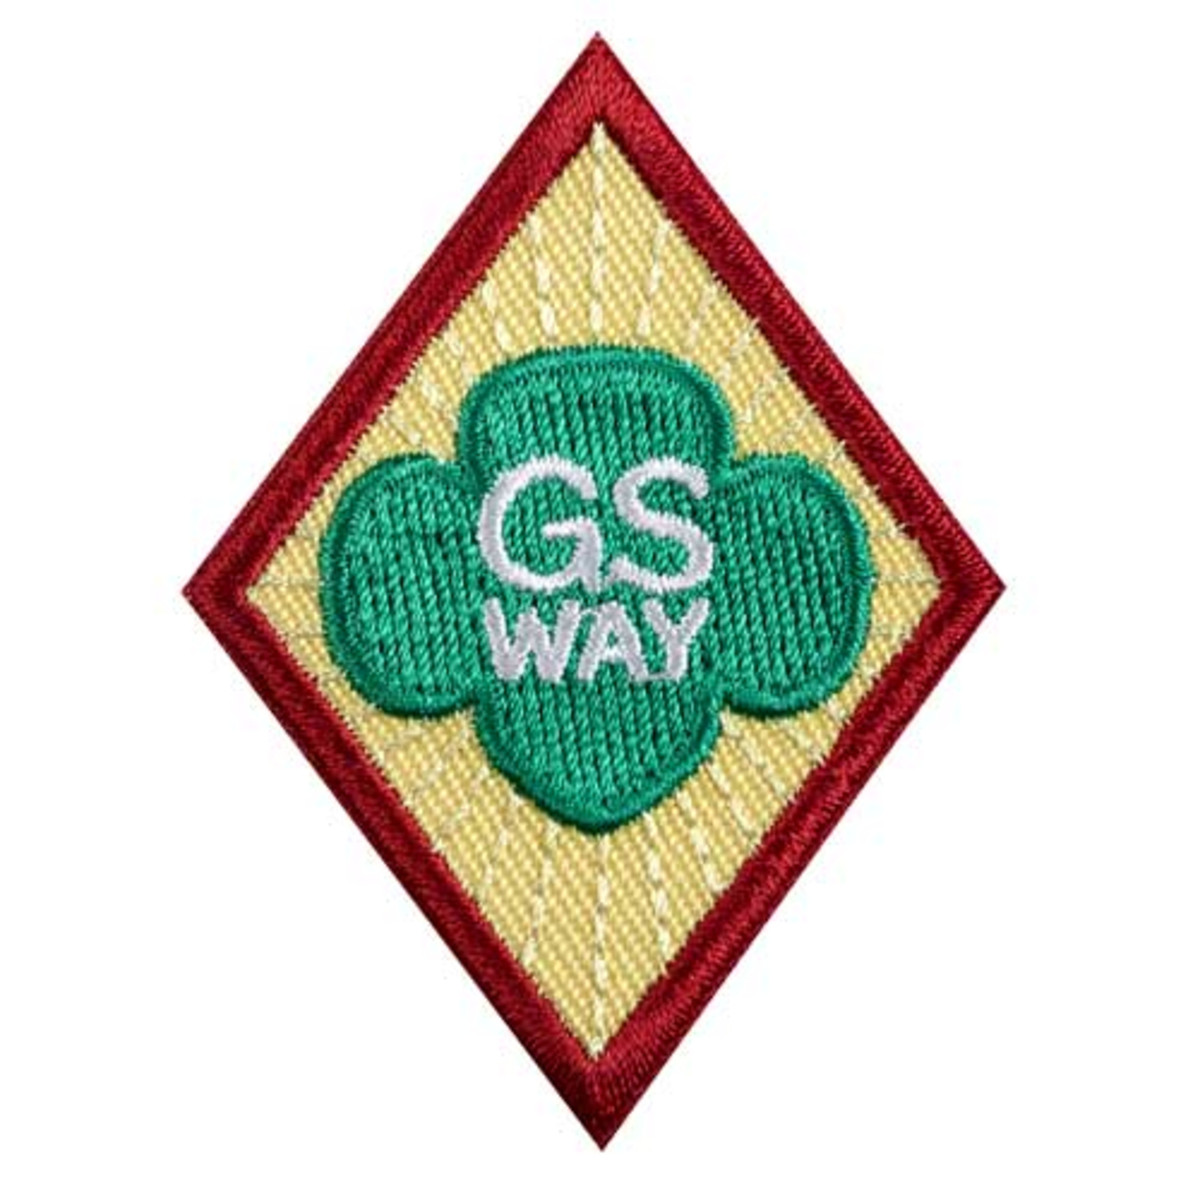 Cad. GS Way